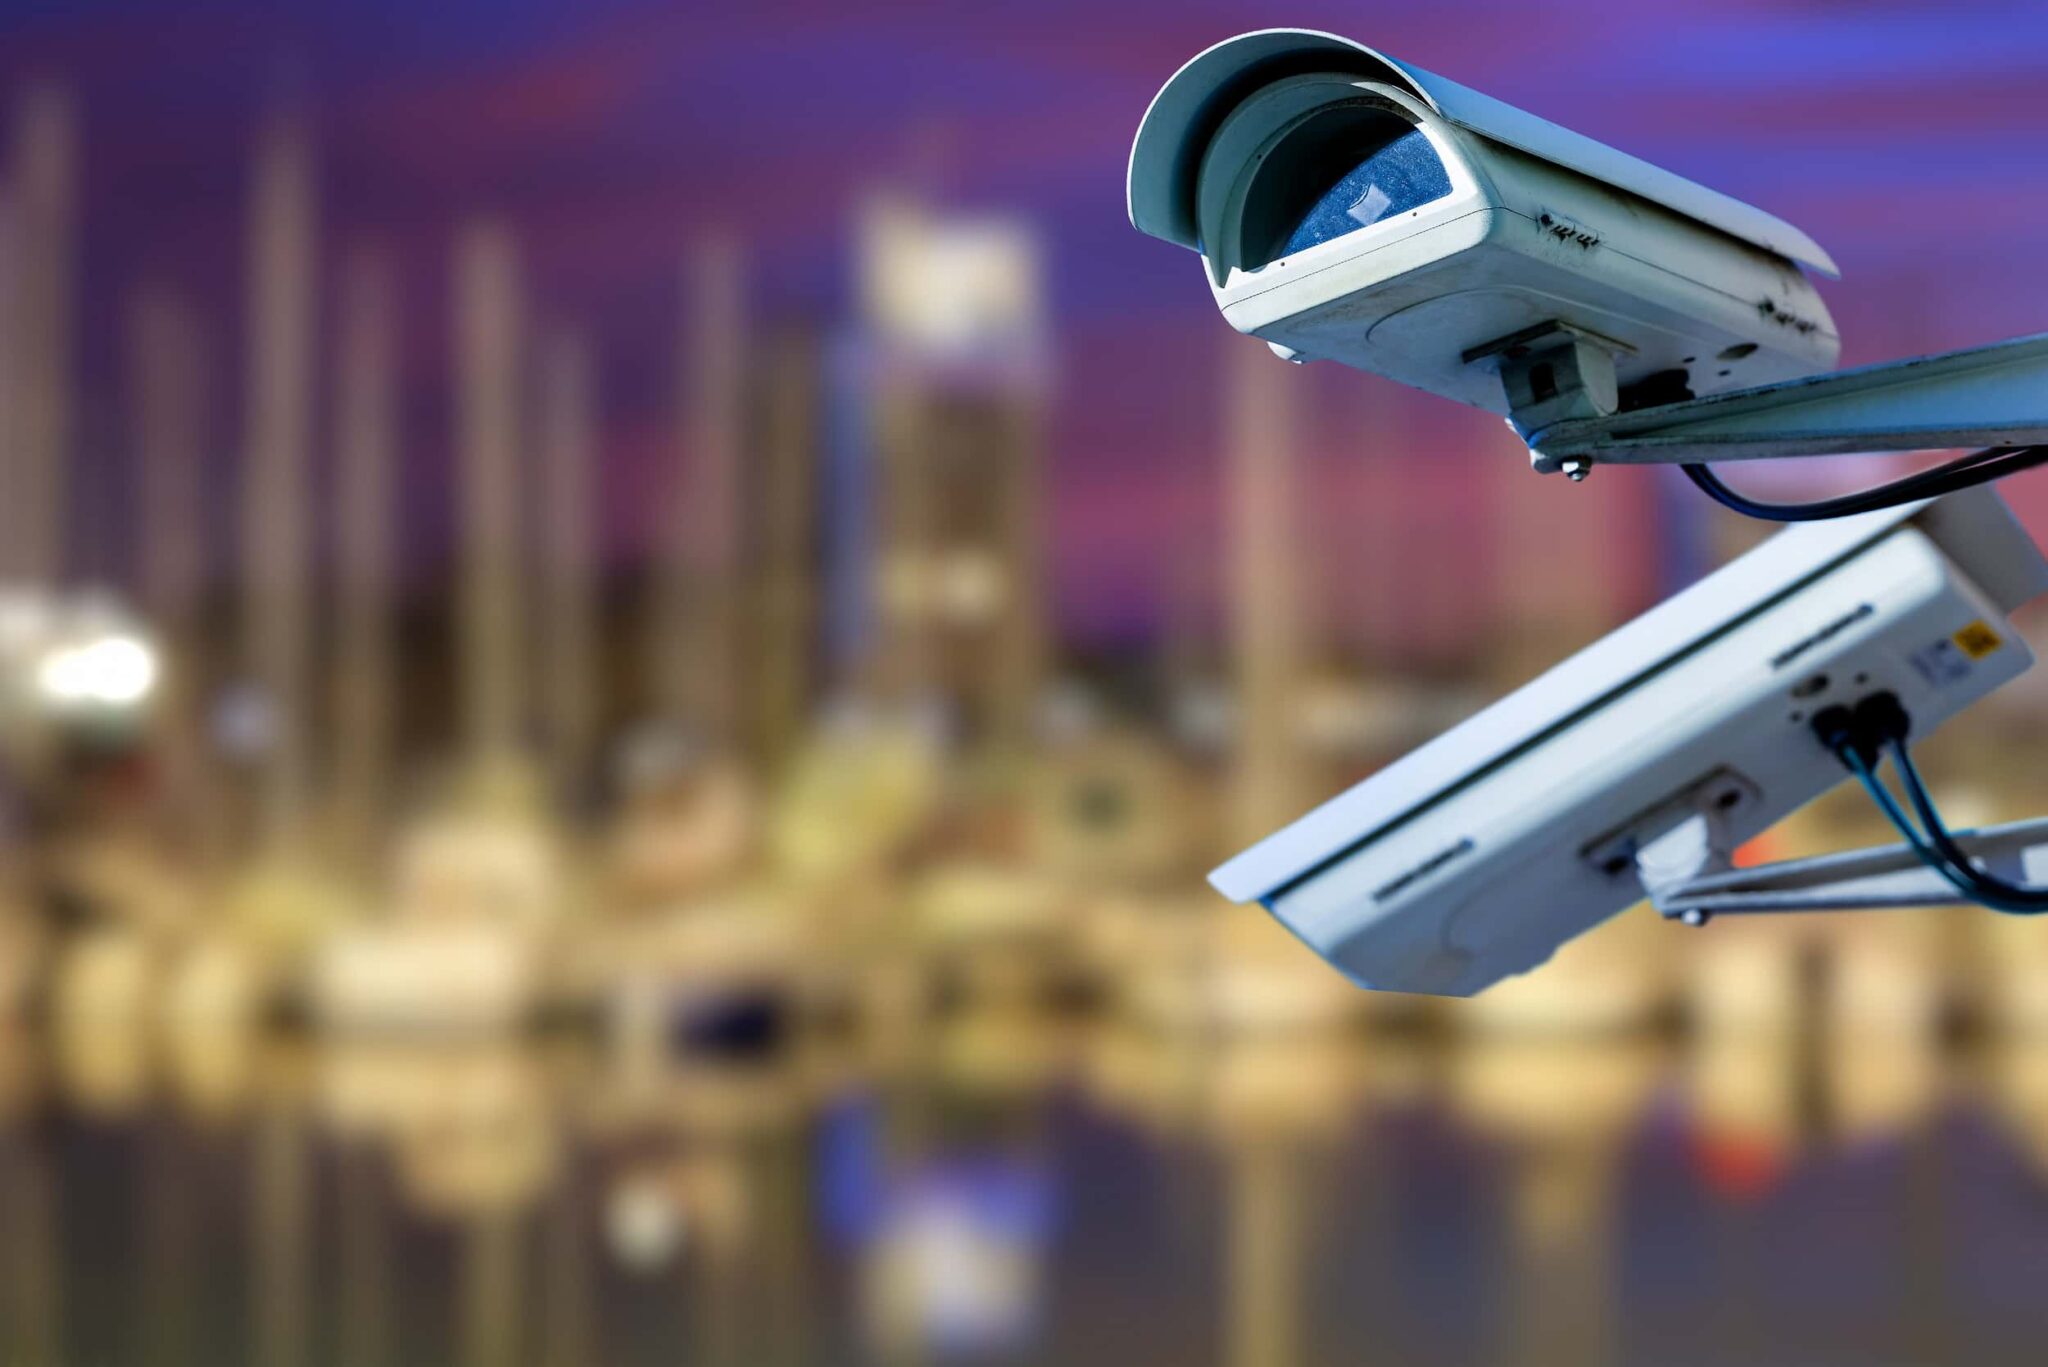 Krænker overvågningskameraer privatlivet? En forklaring af retningslinjer og retspraksis